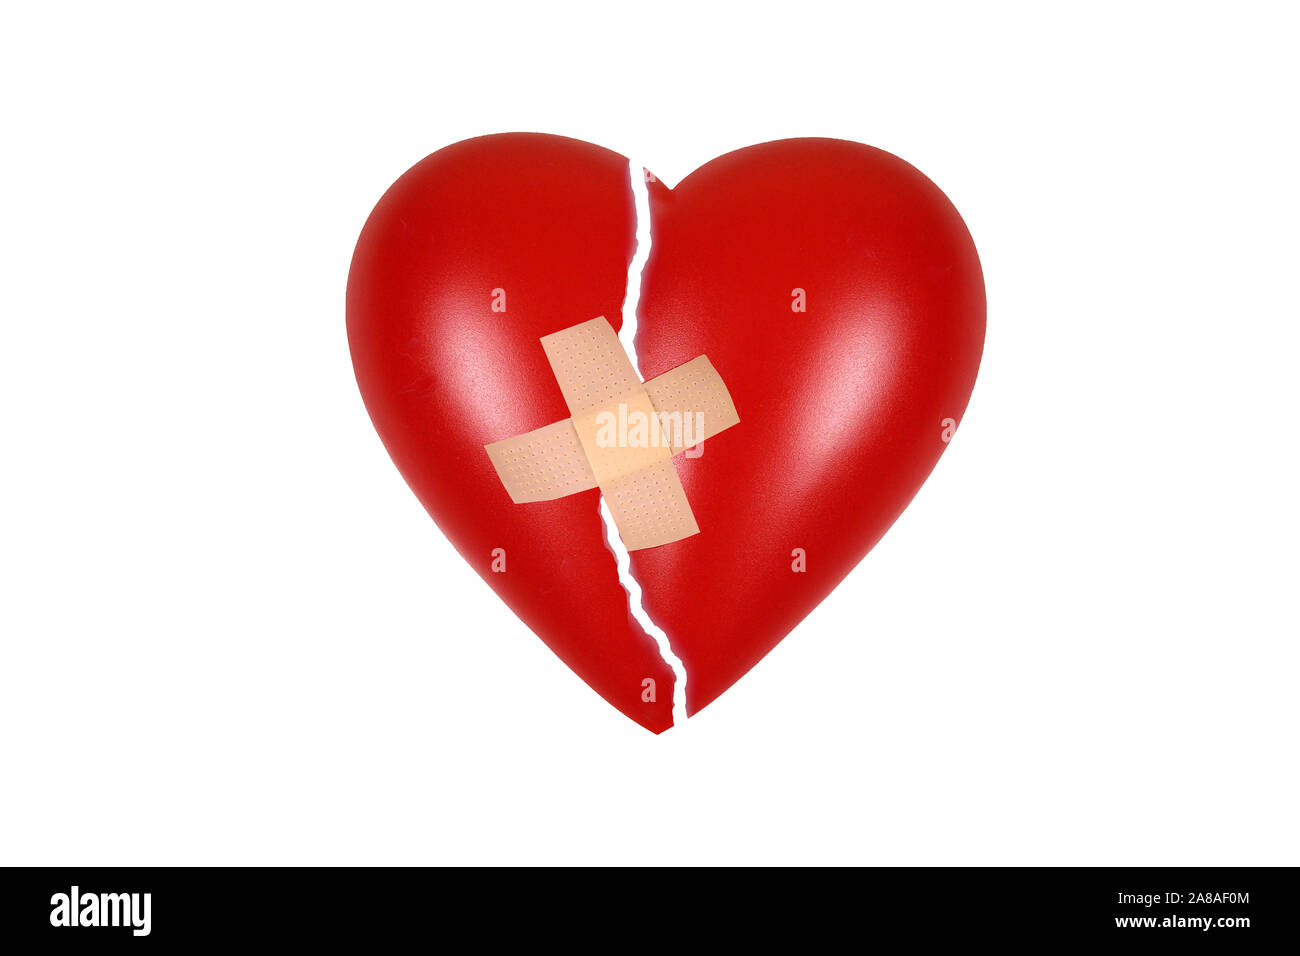 Rotes Herz, Organ, Gesundheit, Körperteil, Gebrochenes Herz, Schmerz, Liebeskummer, Trauer, Stock Photo